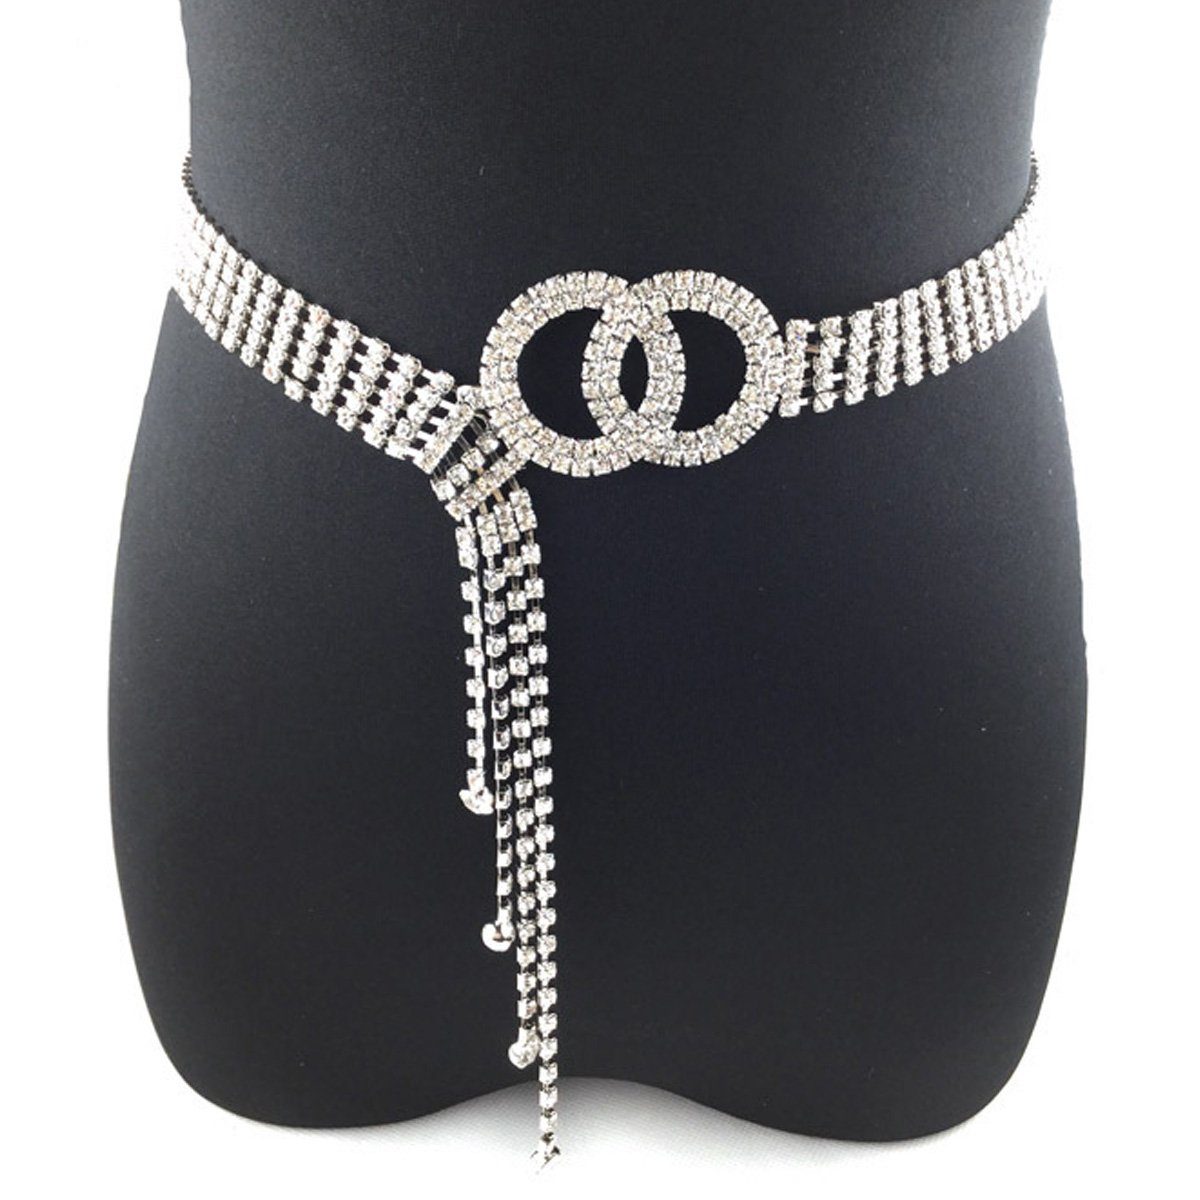 Houhence Kettengürtel Frauen Strass Gürtel für Kleid Diamantkette Gürtel Kristall glänzend Silber | Kettengürtel